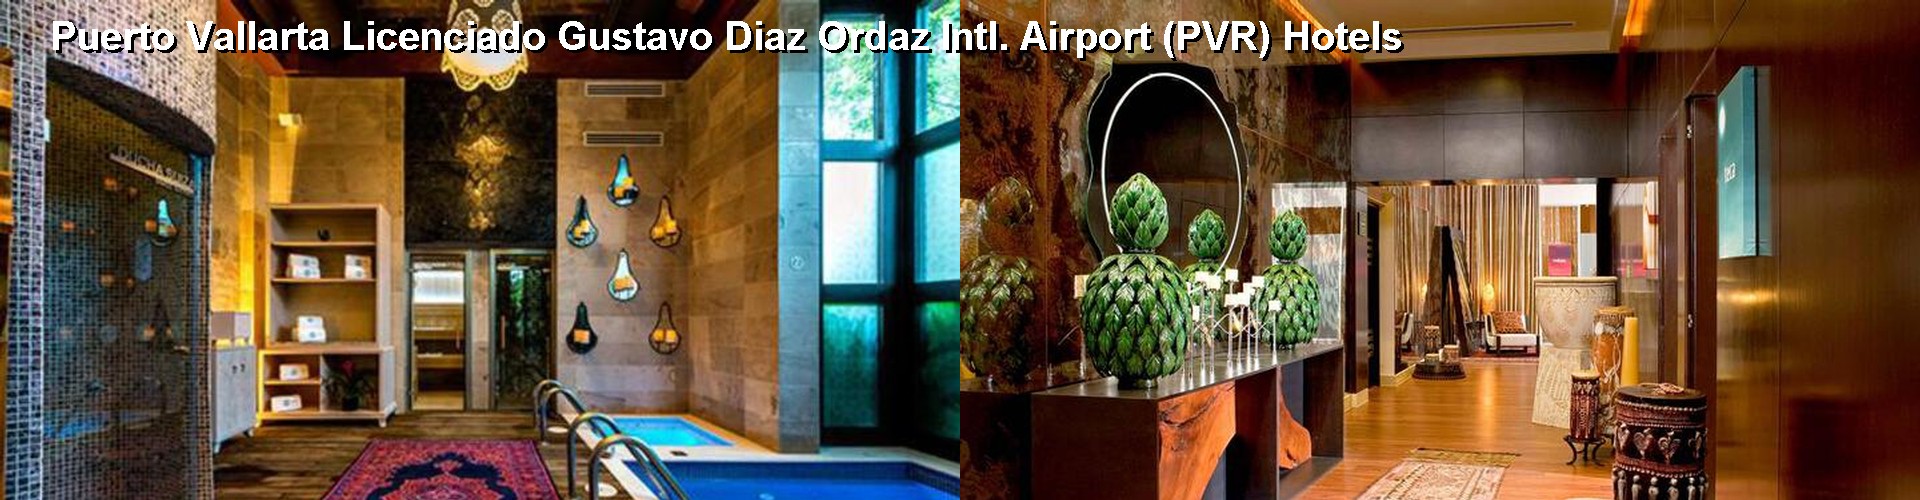 5 Best Hotels near Puerto Vallarta Licenciado Gustavo Diaz Ordaz Intl. Airport (PVR)